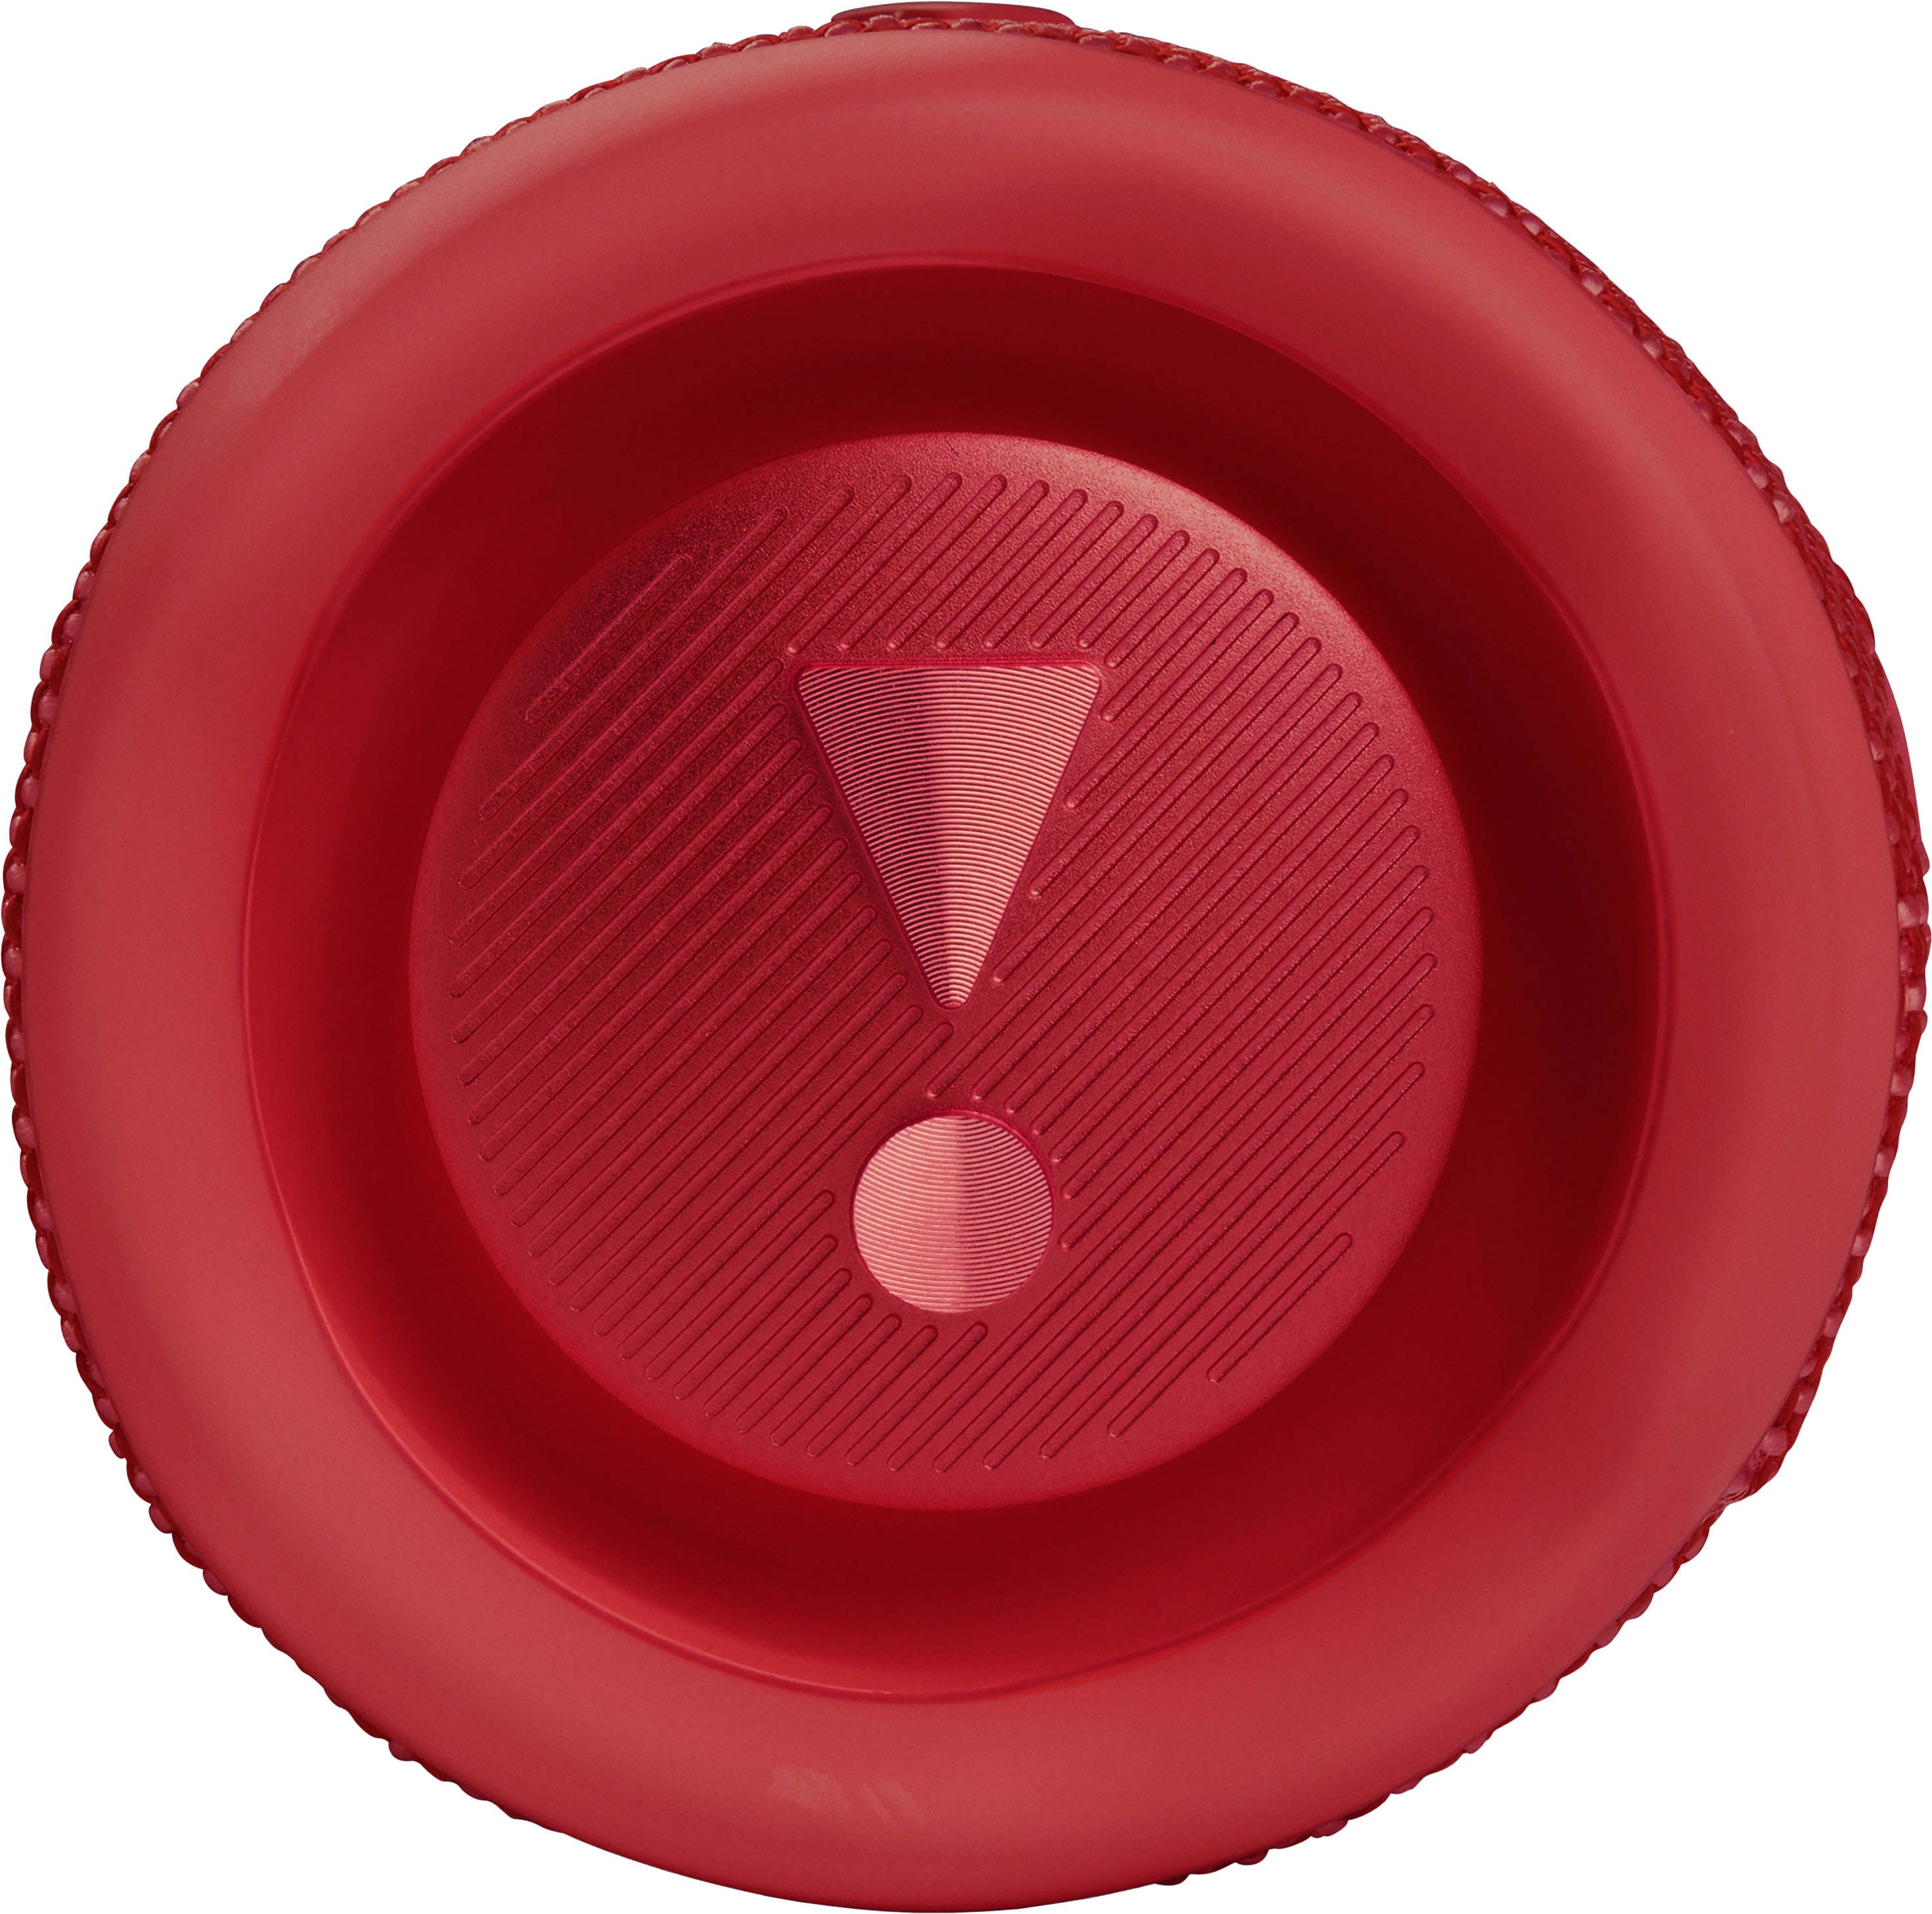 JBL FLIP6 JBLFLIP6REDAM Buy Red Speaker - Portable Best Waterproof